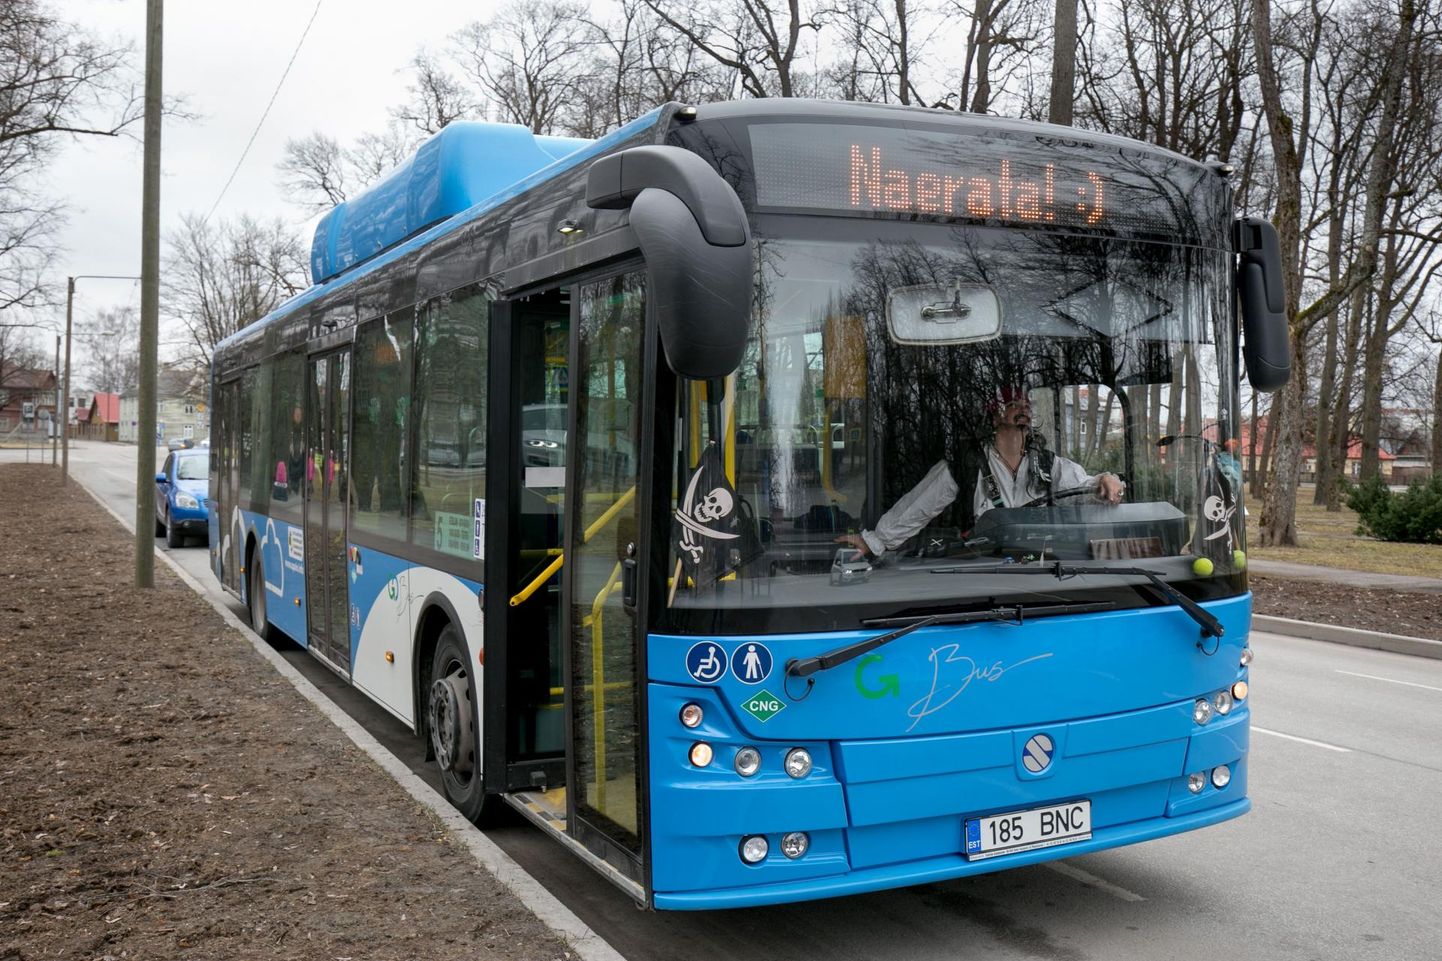 Festivali ajal saab tasuta bussiga Tallinna ja Rakvere vahet sõita.